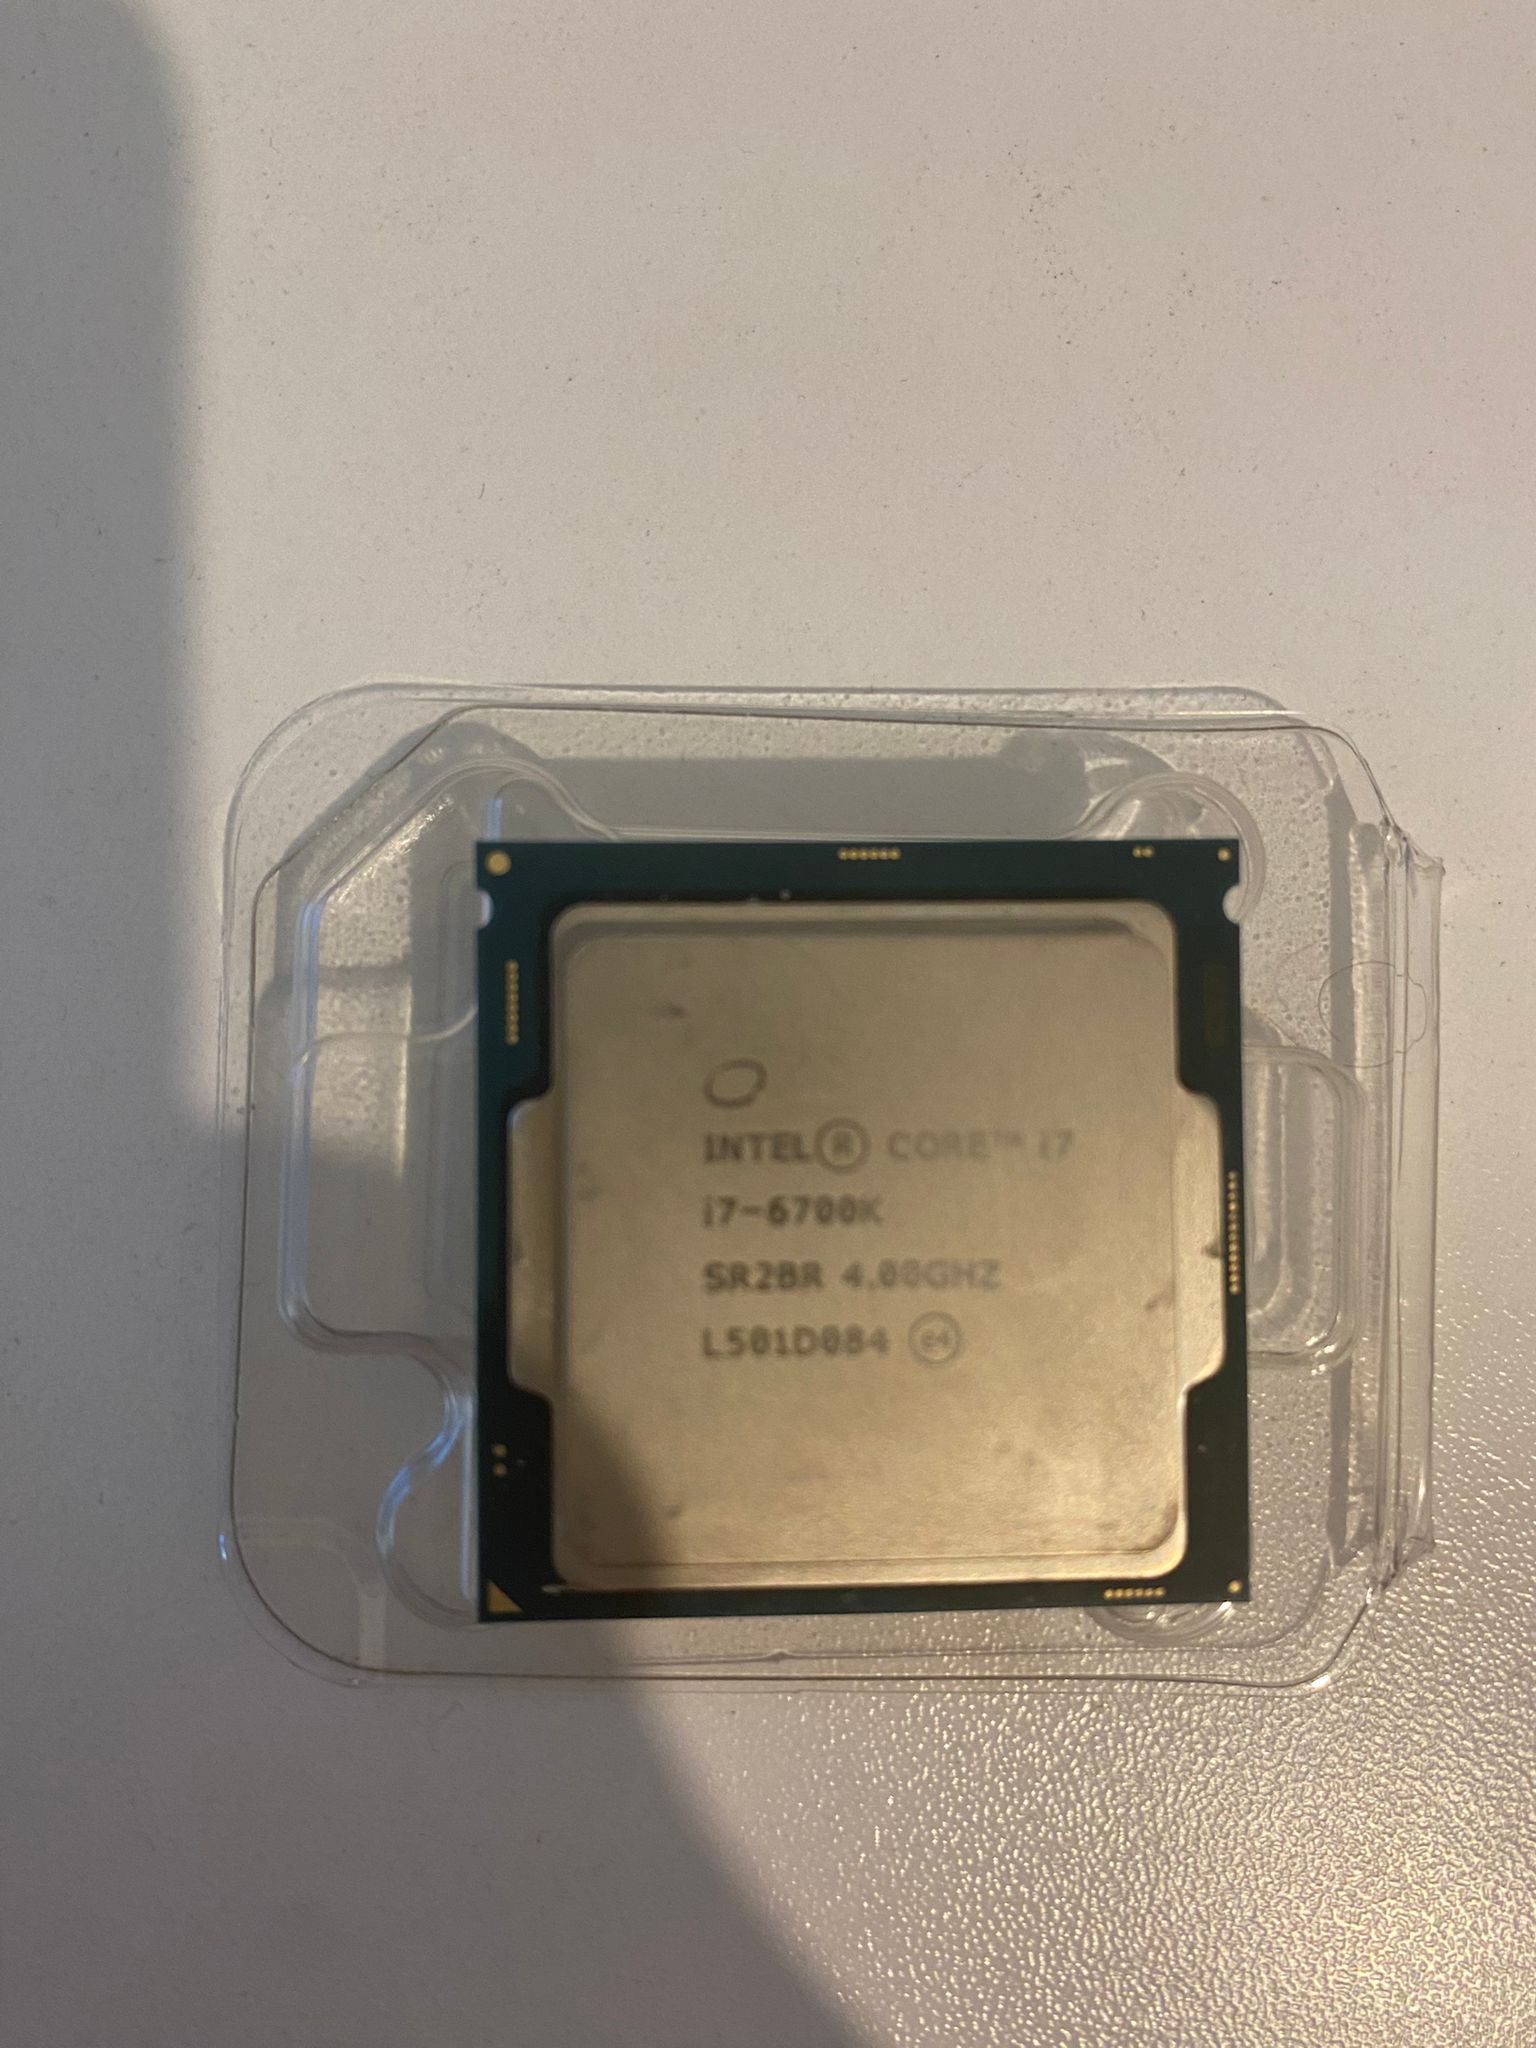 Intel Core i7-6700K İşlemci (Revize Edildi) | DonanımHaber Forum